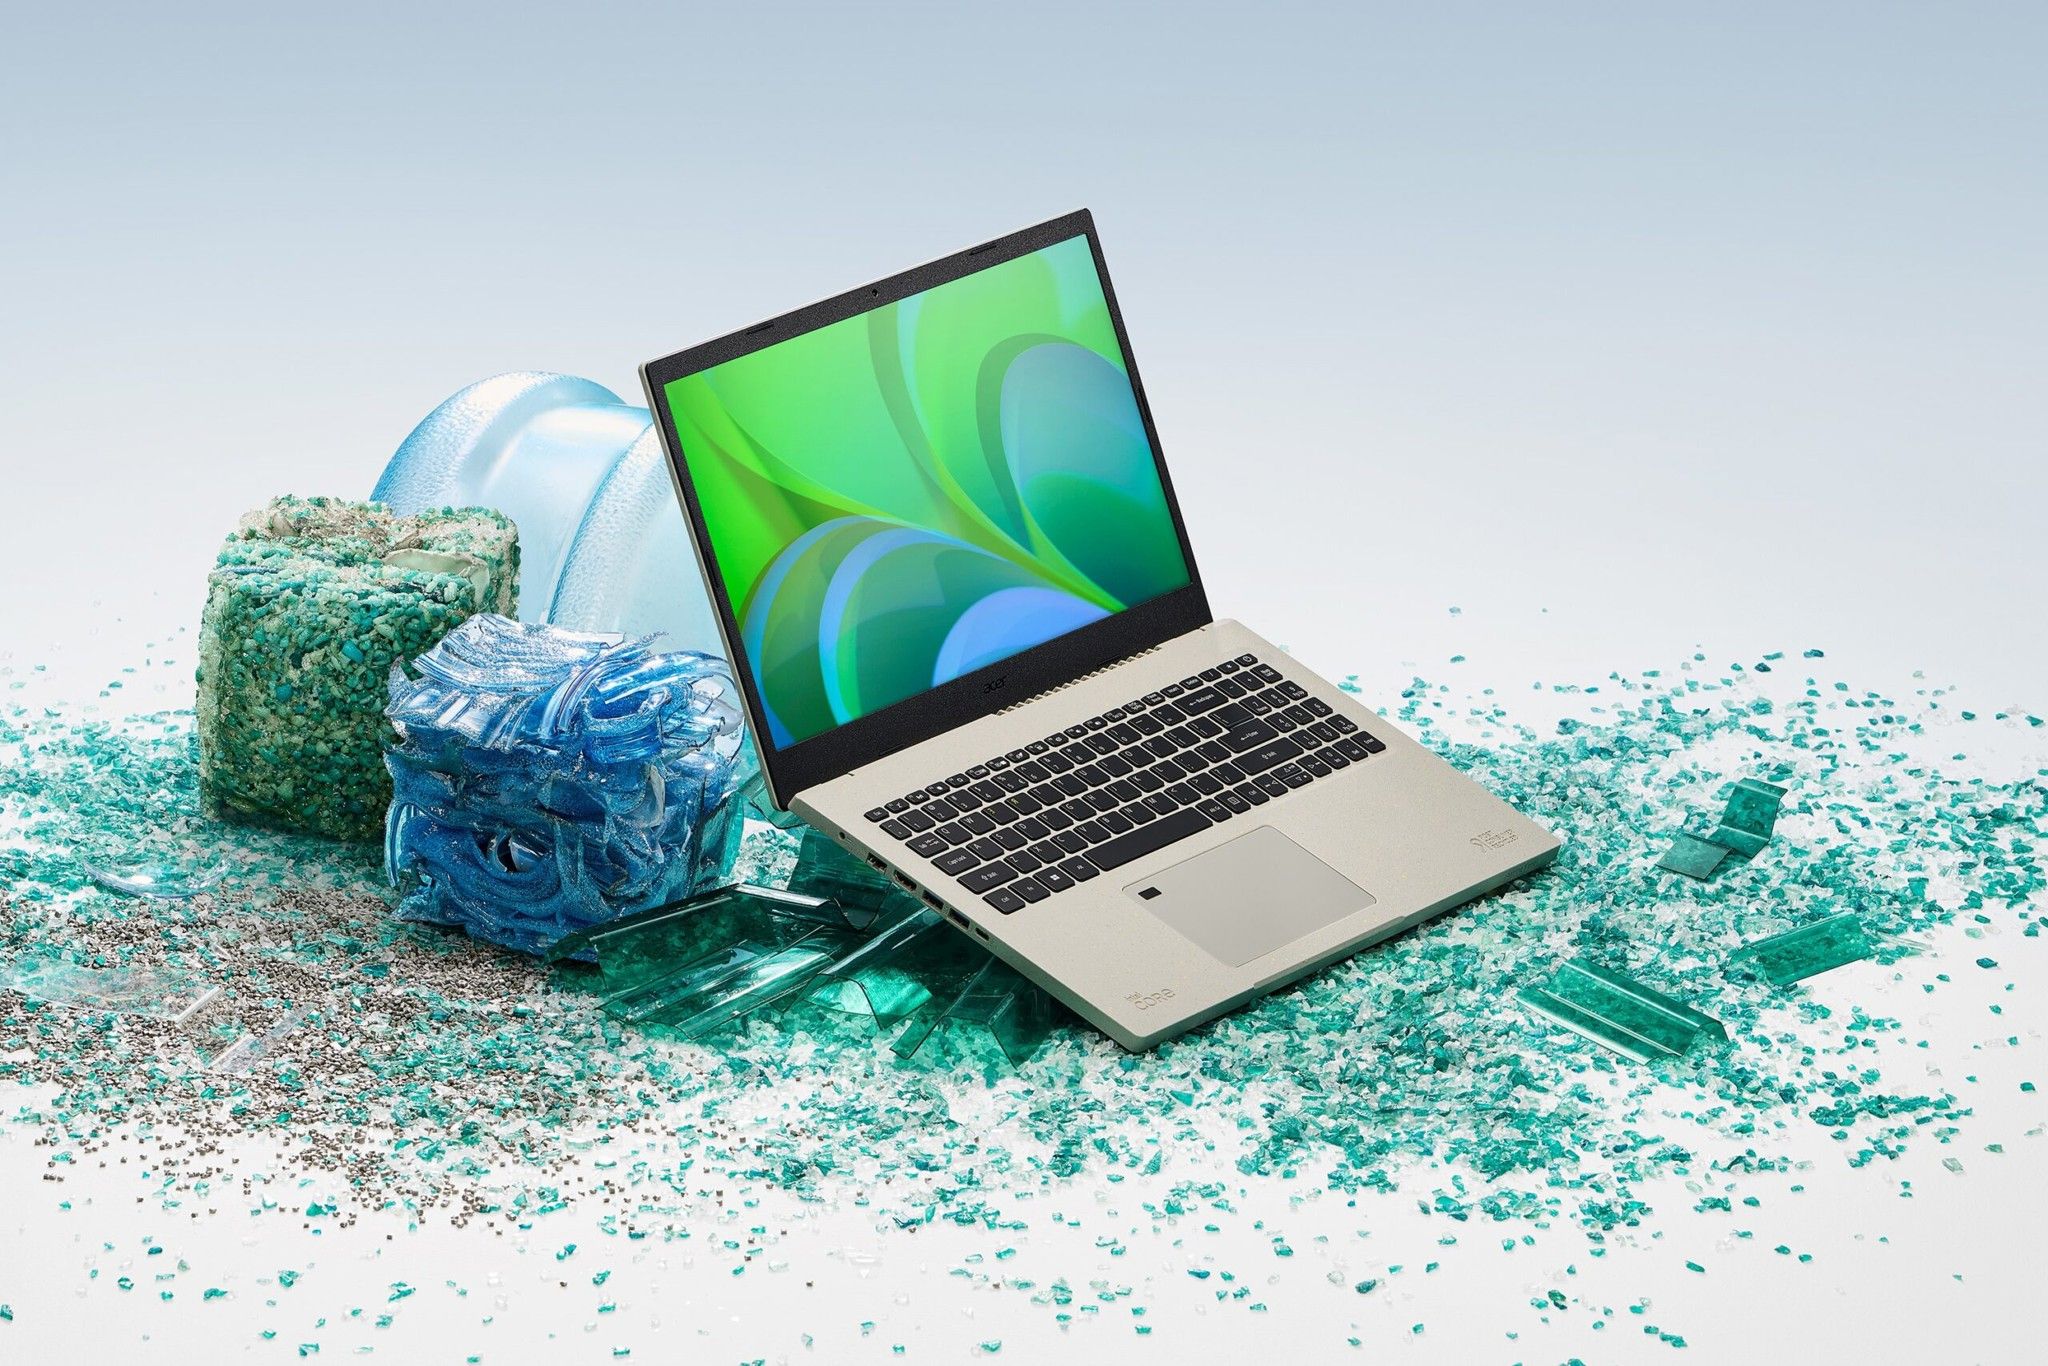 Acer mở rộng dải sản phẩm Vero thân thiện với môi trường với laptop Aspire Vero, TravelMate Vero và PC Veriton Vero Mini